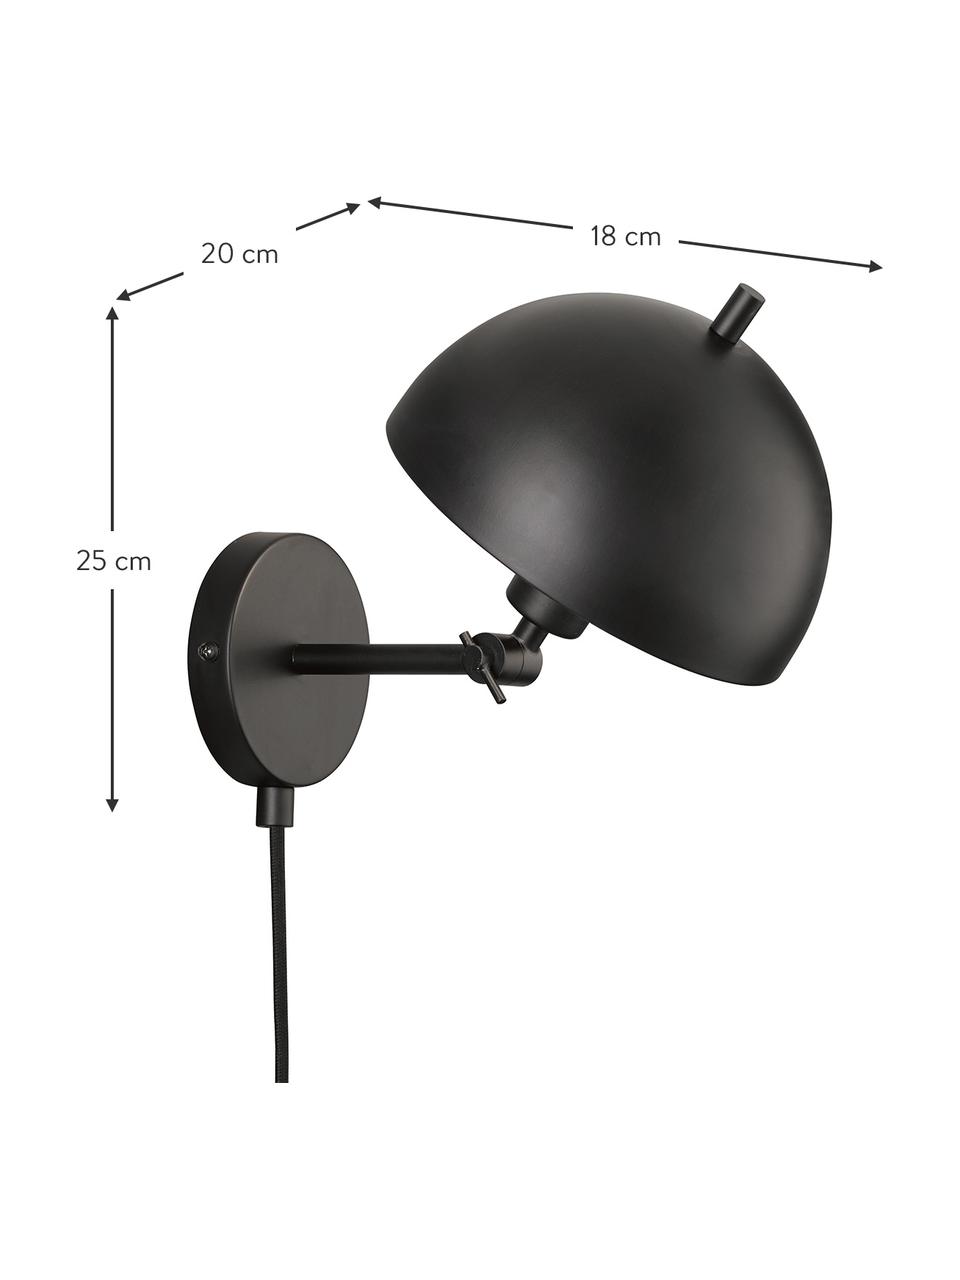 Verstellbare Retro-Wandleuchte Kia mit Stecker, Lampenschirm: Metall, beschichtet, Schwarz, 20 x 25 cm